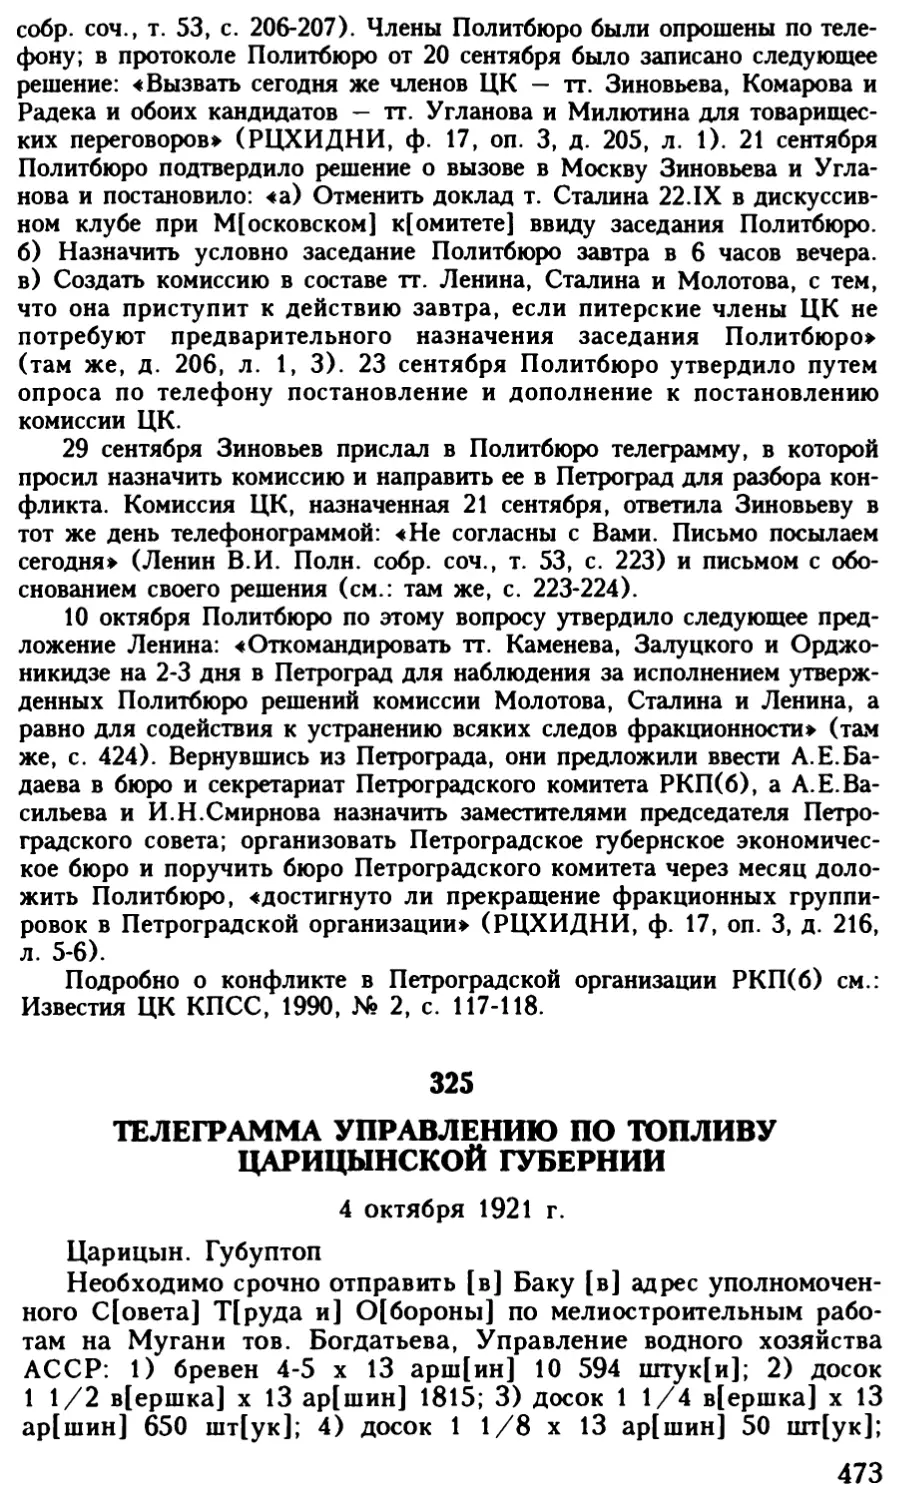 325. Телеграмма управлению по топливу Царицынской губернии. 4 октября 1921 г